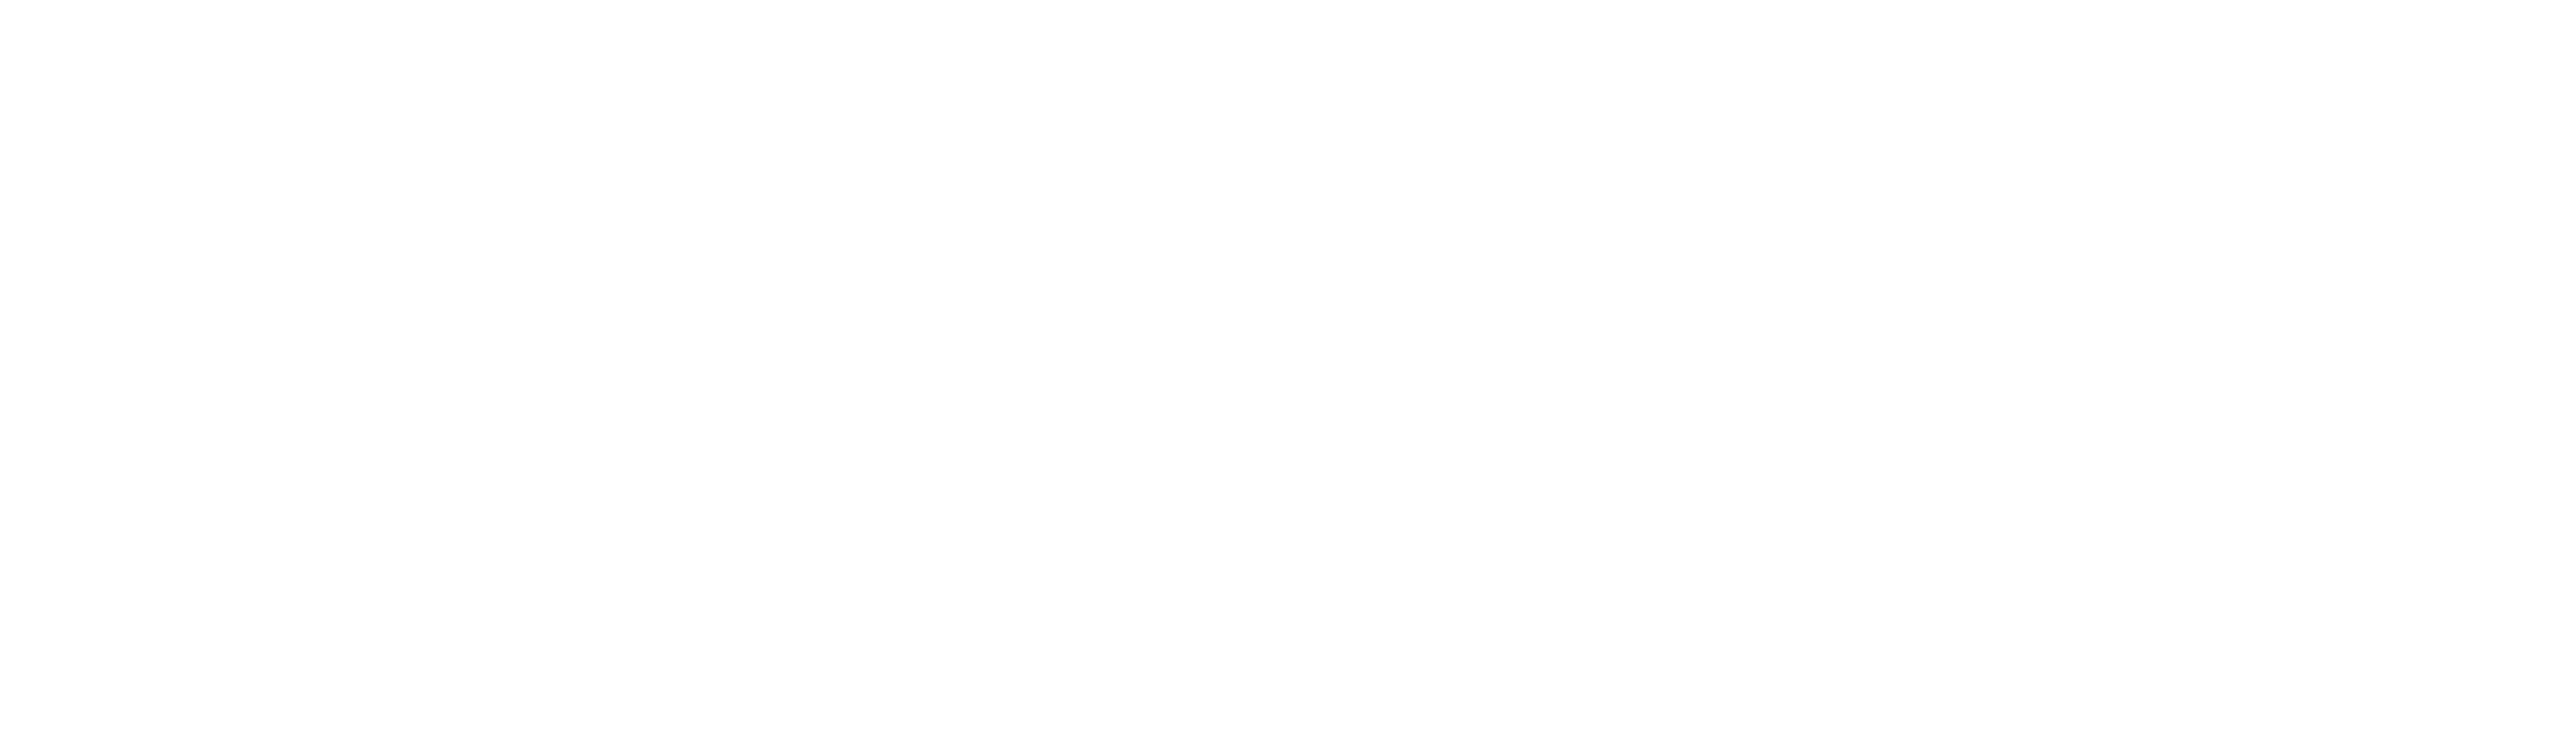 webfume white logo